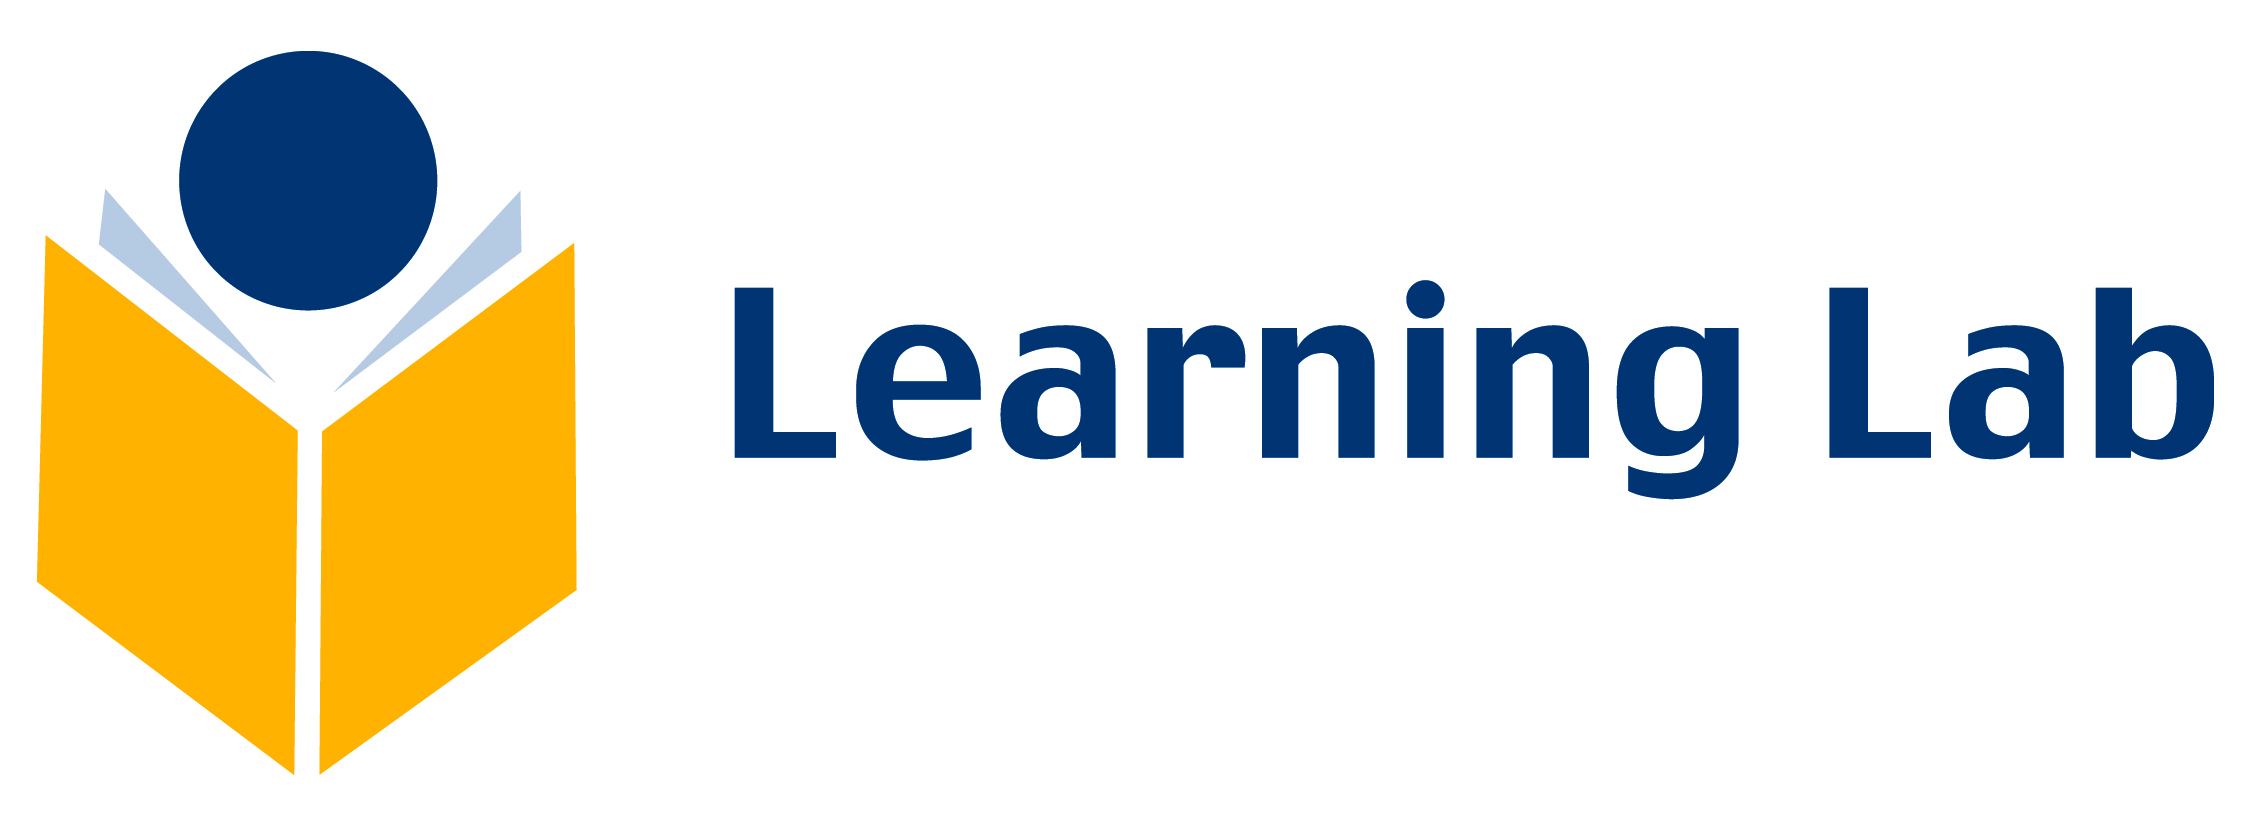 Learning Lab, Inc. logo